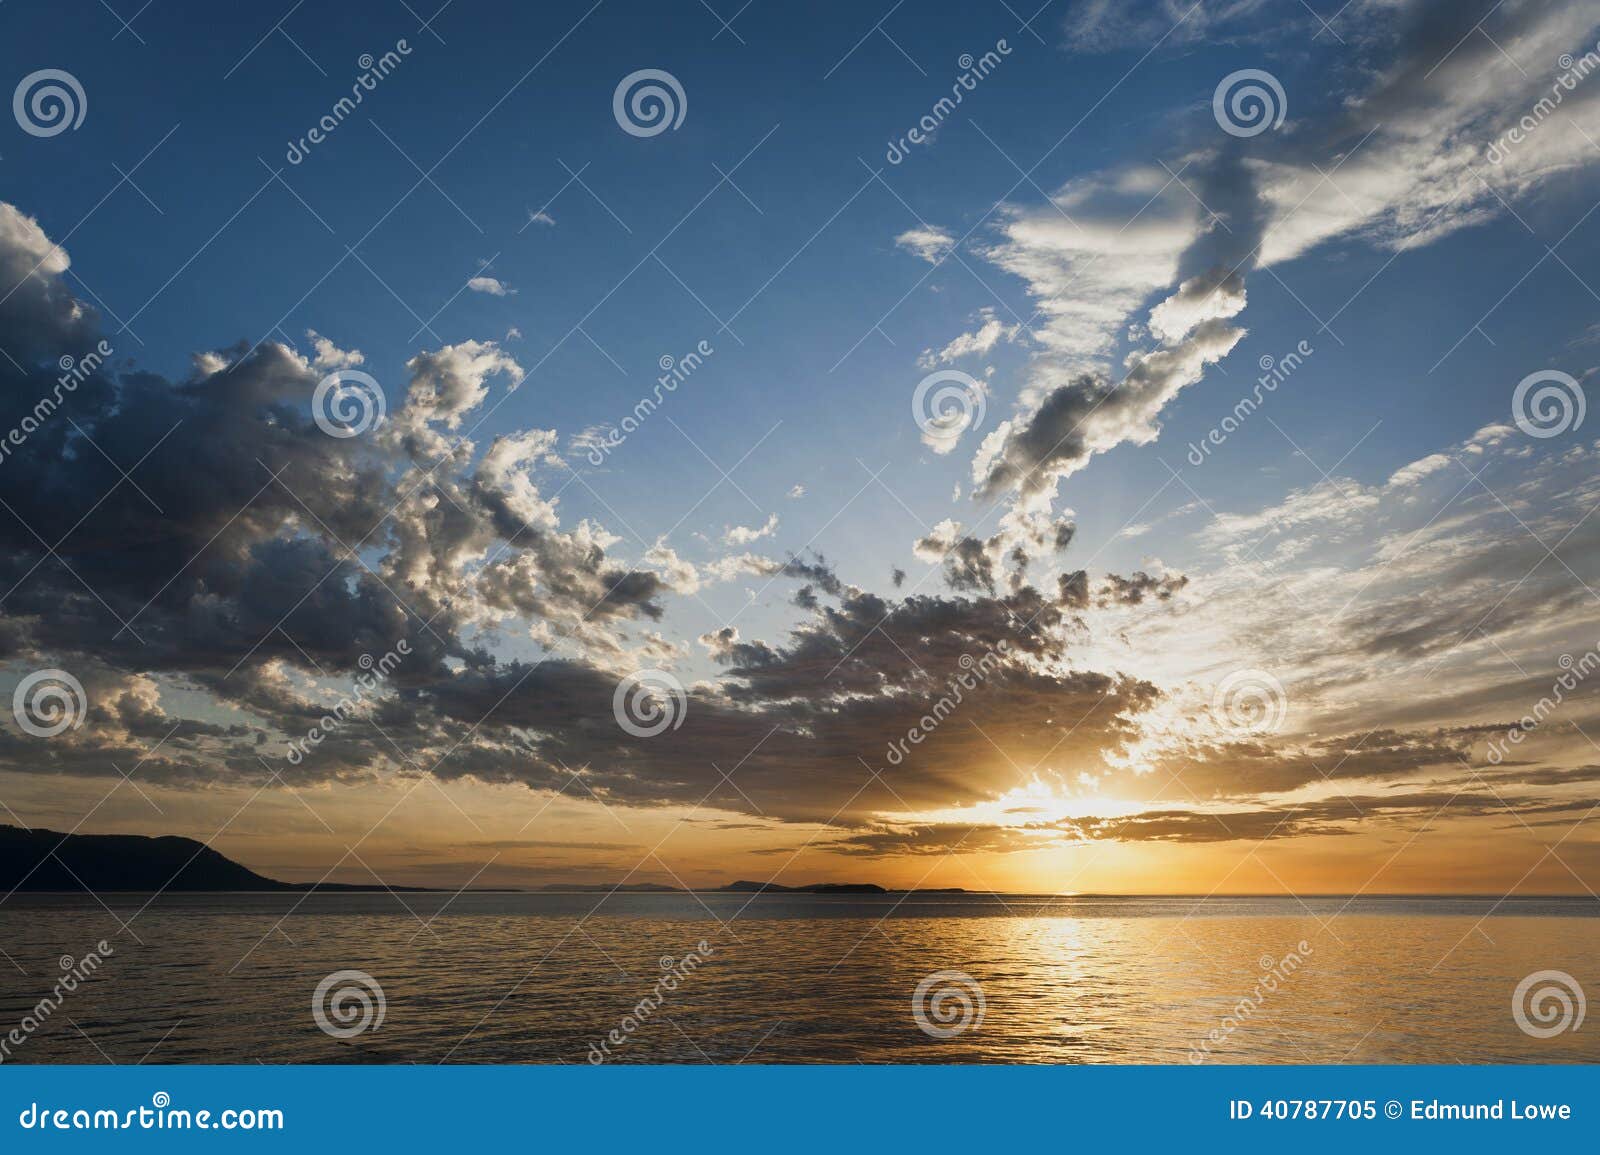 orcas island sunset